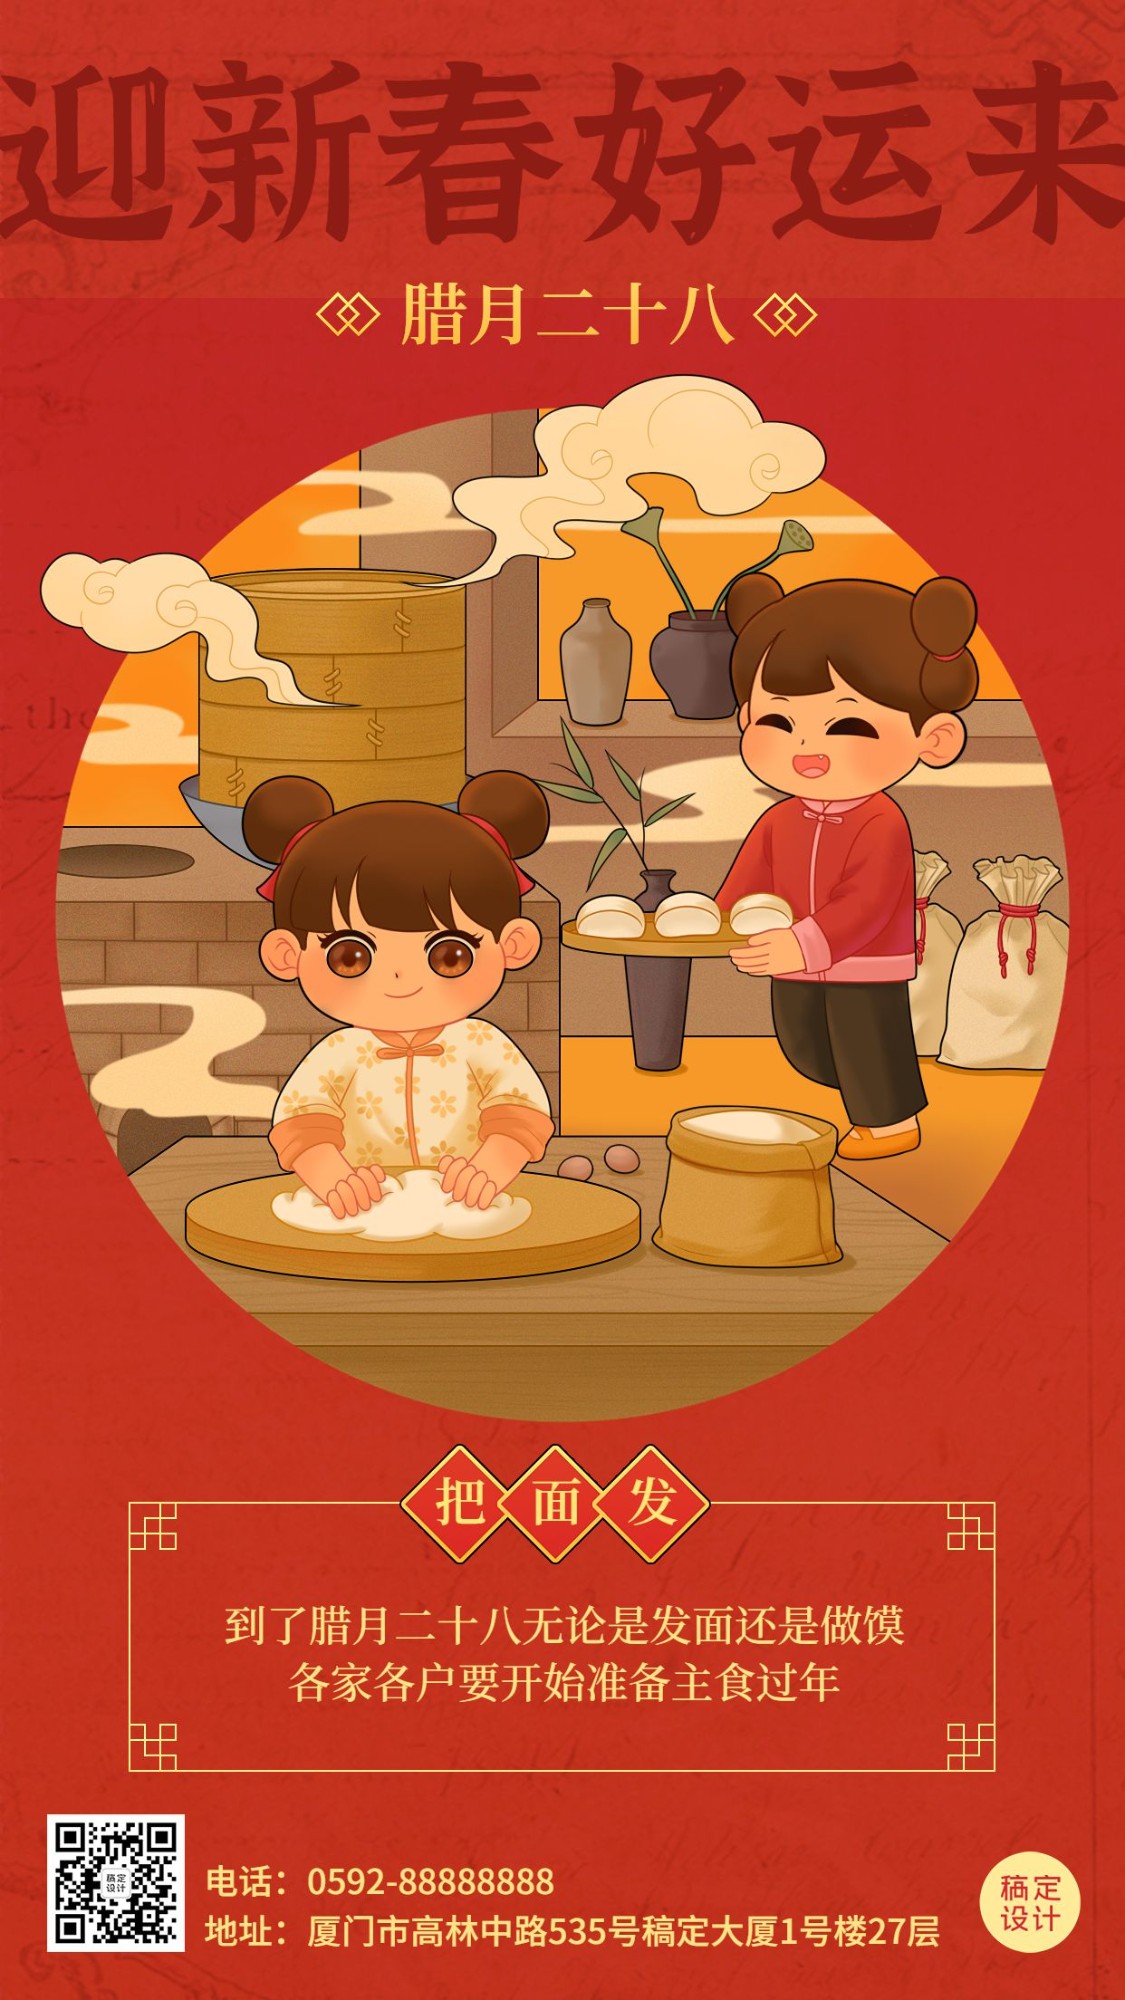 春节新年年前腊月二十八祝福系列手机海报预览效果